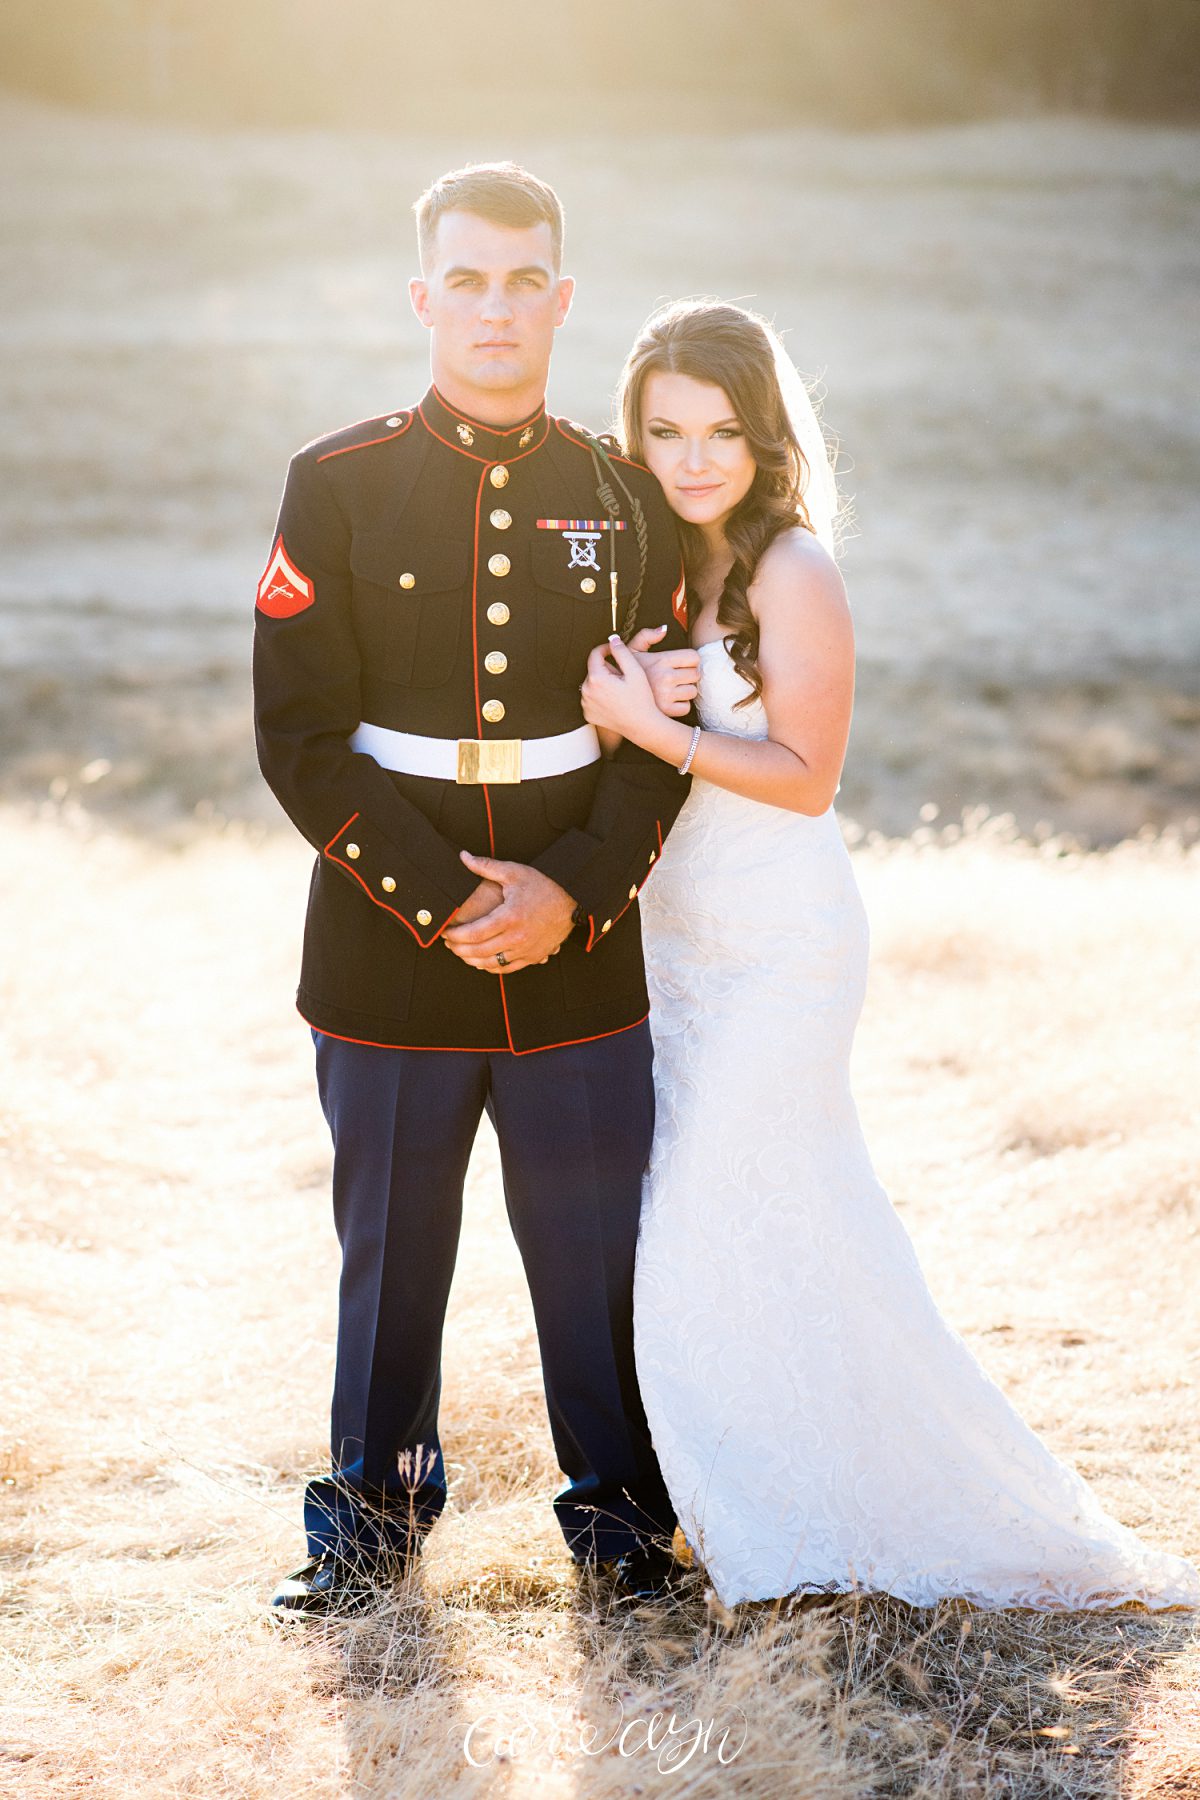 Carrie Ayn; Cameron Park Wedding Photographer; El Dorado Wedding Photographer